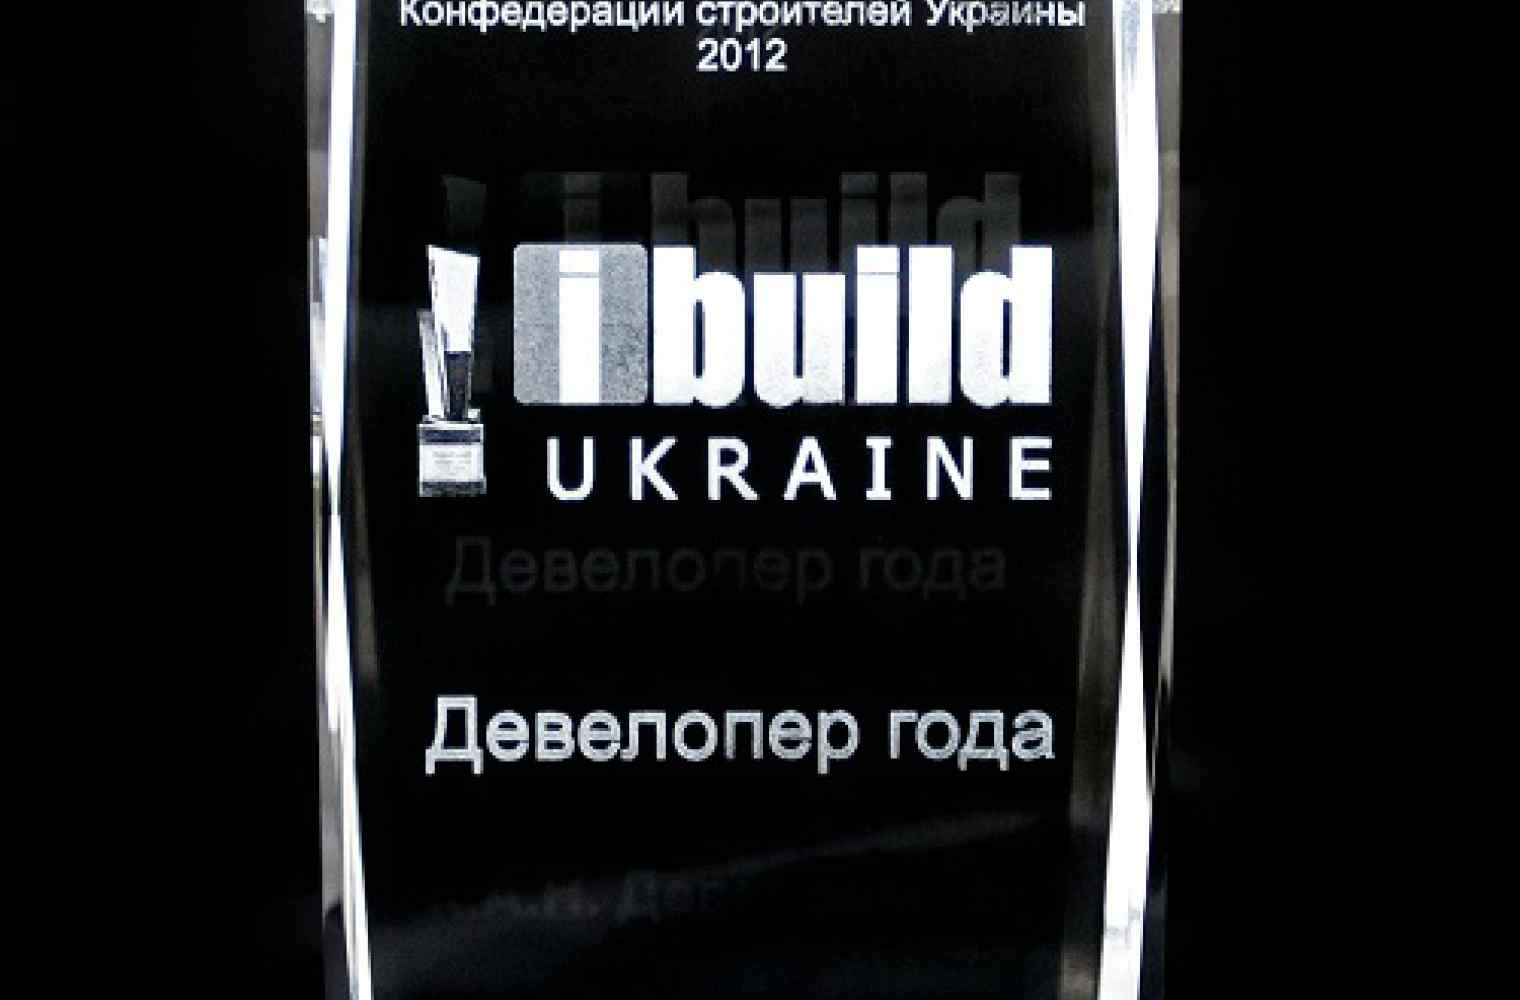 Компания «К.А.Н. Девелопмент» победитель в номинации «Девелопер года» - вторая Всеукраинская премия IBuild Ukraine 2012